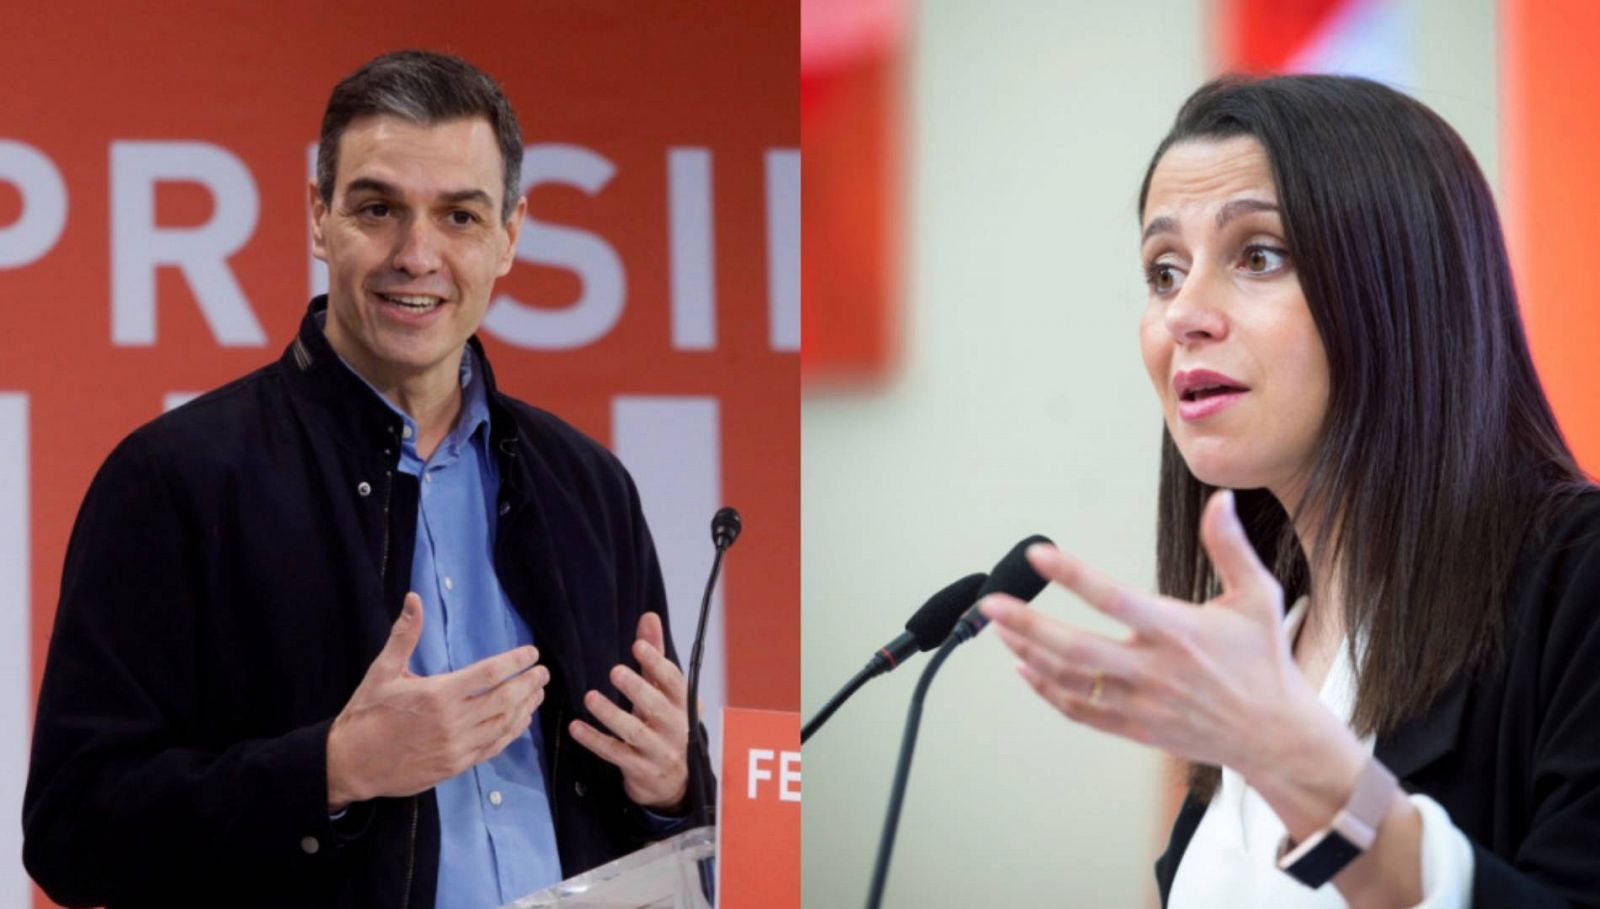 Elecciones catalanas | Los líderes nacionales respaldan a sus candidatos en el segundo día de campaña